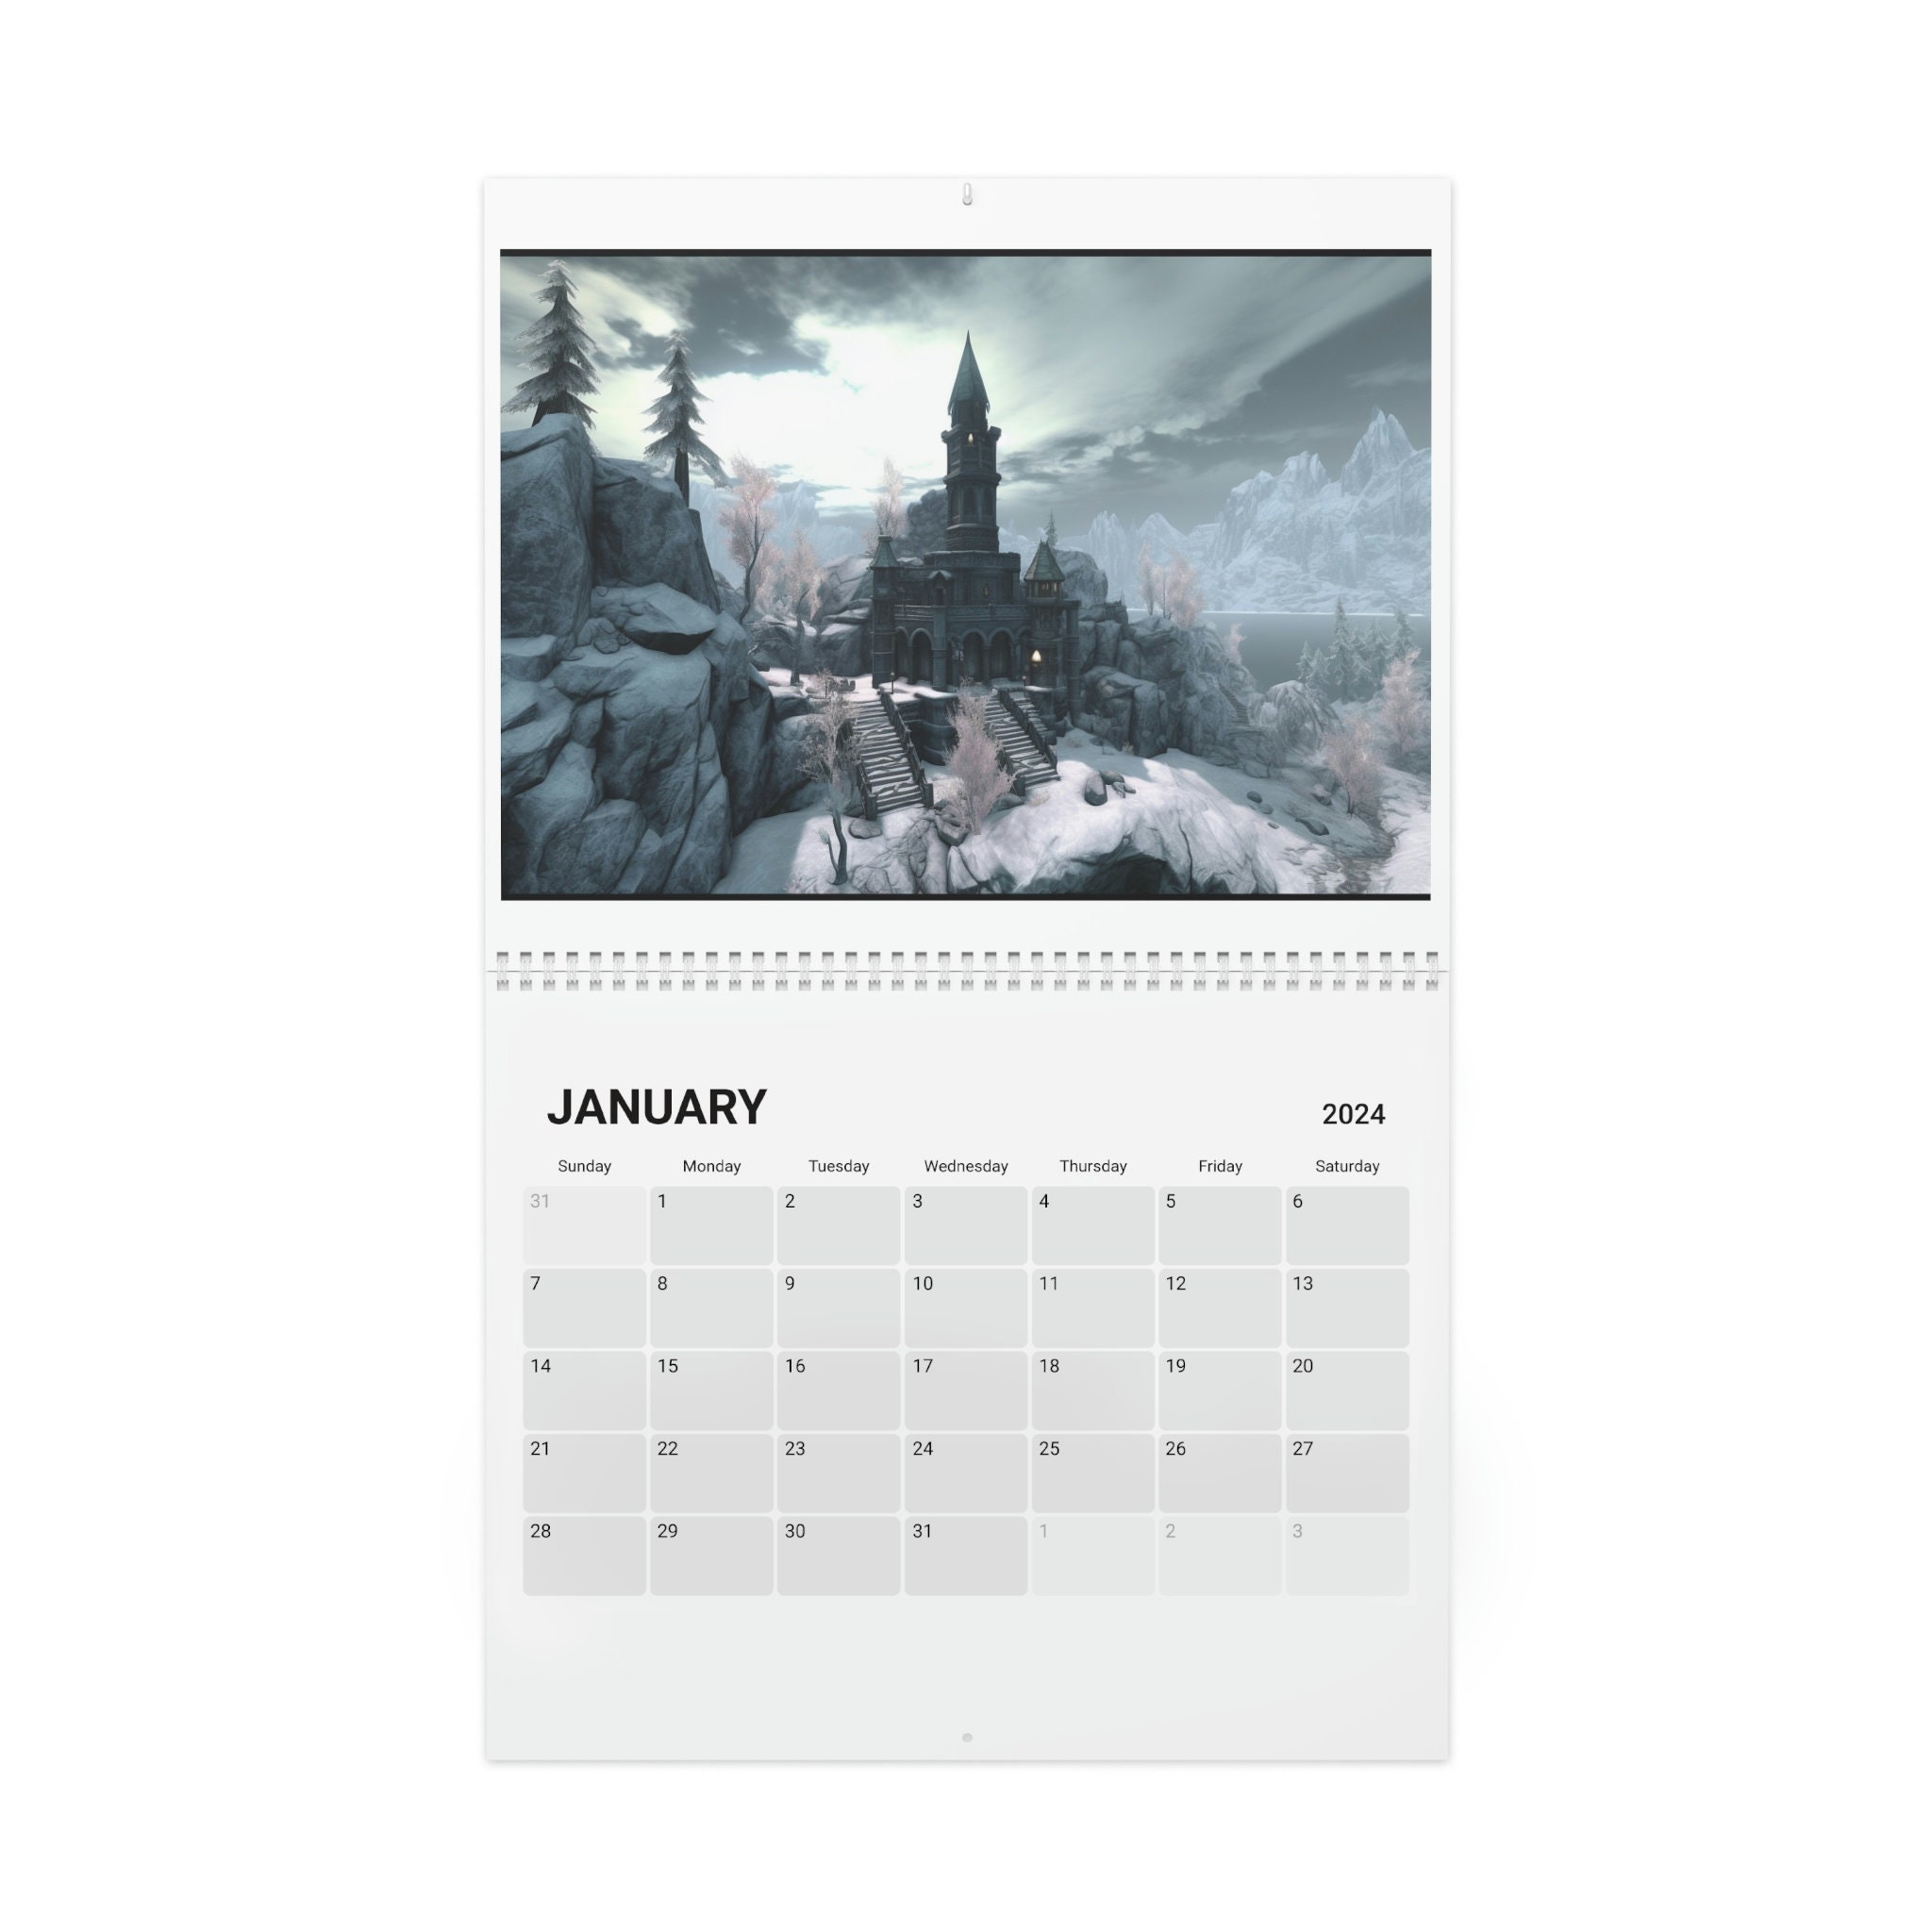 2024 Video Game Release Date Calendar